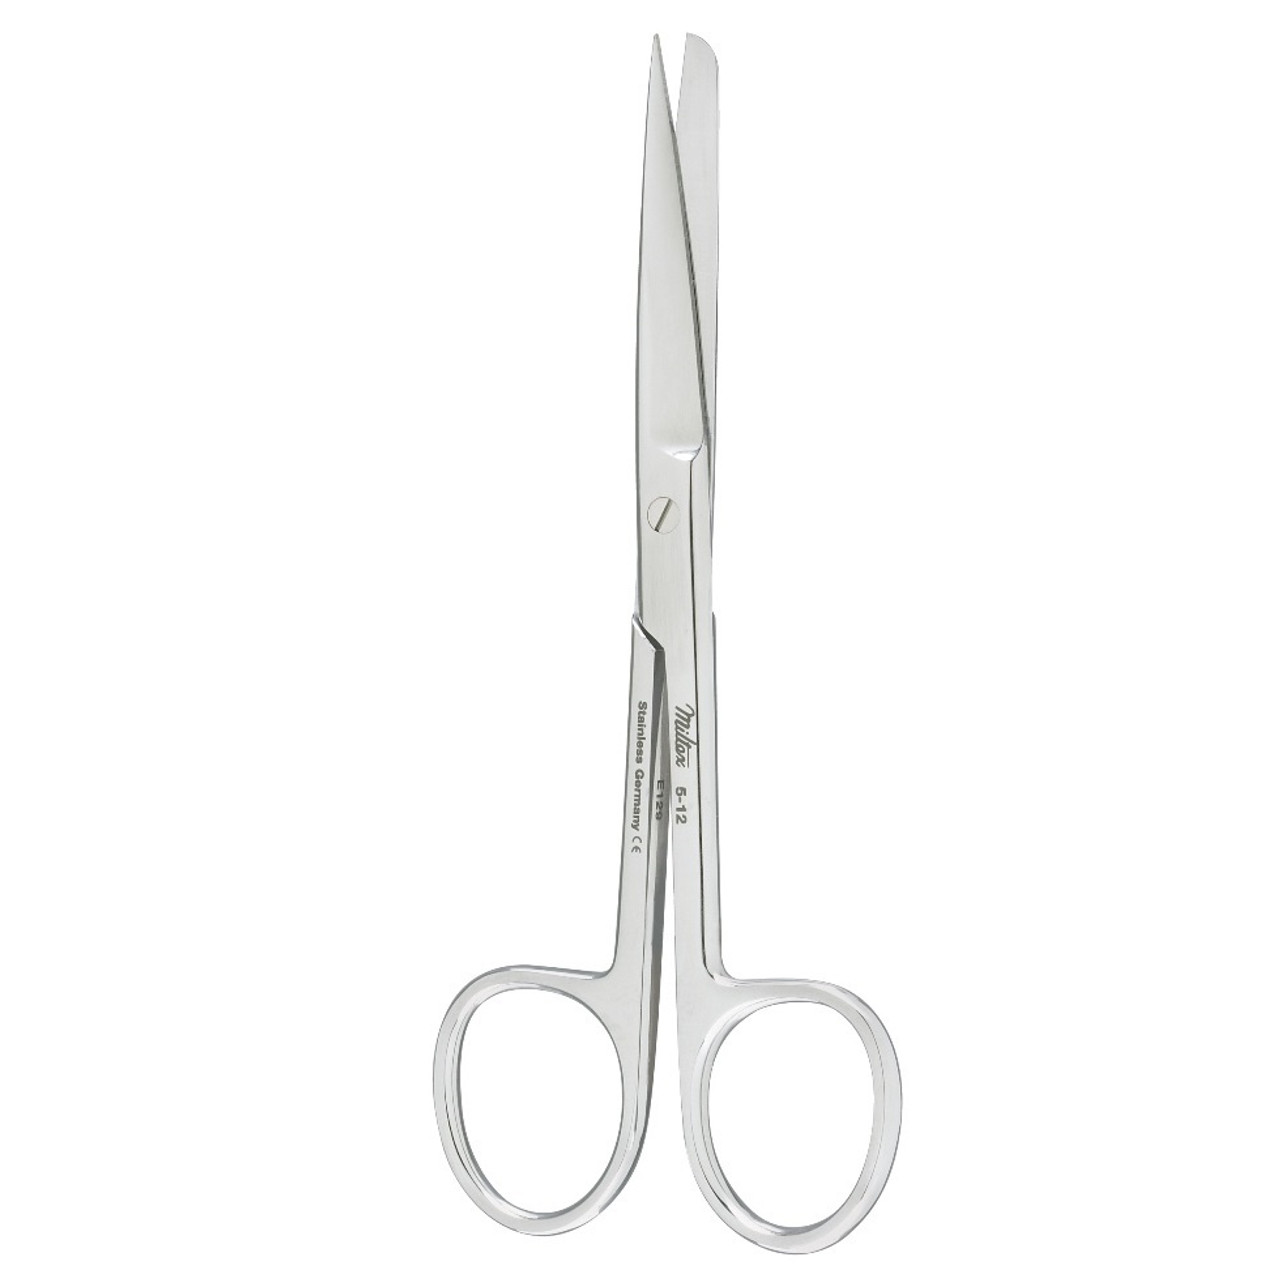 12 Straight Sharp Scissors